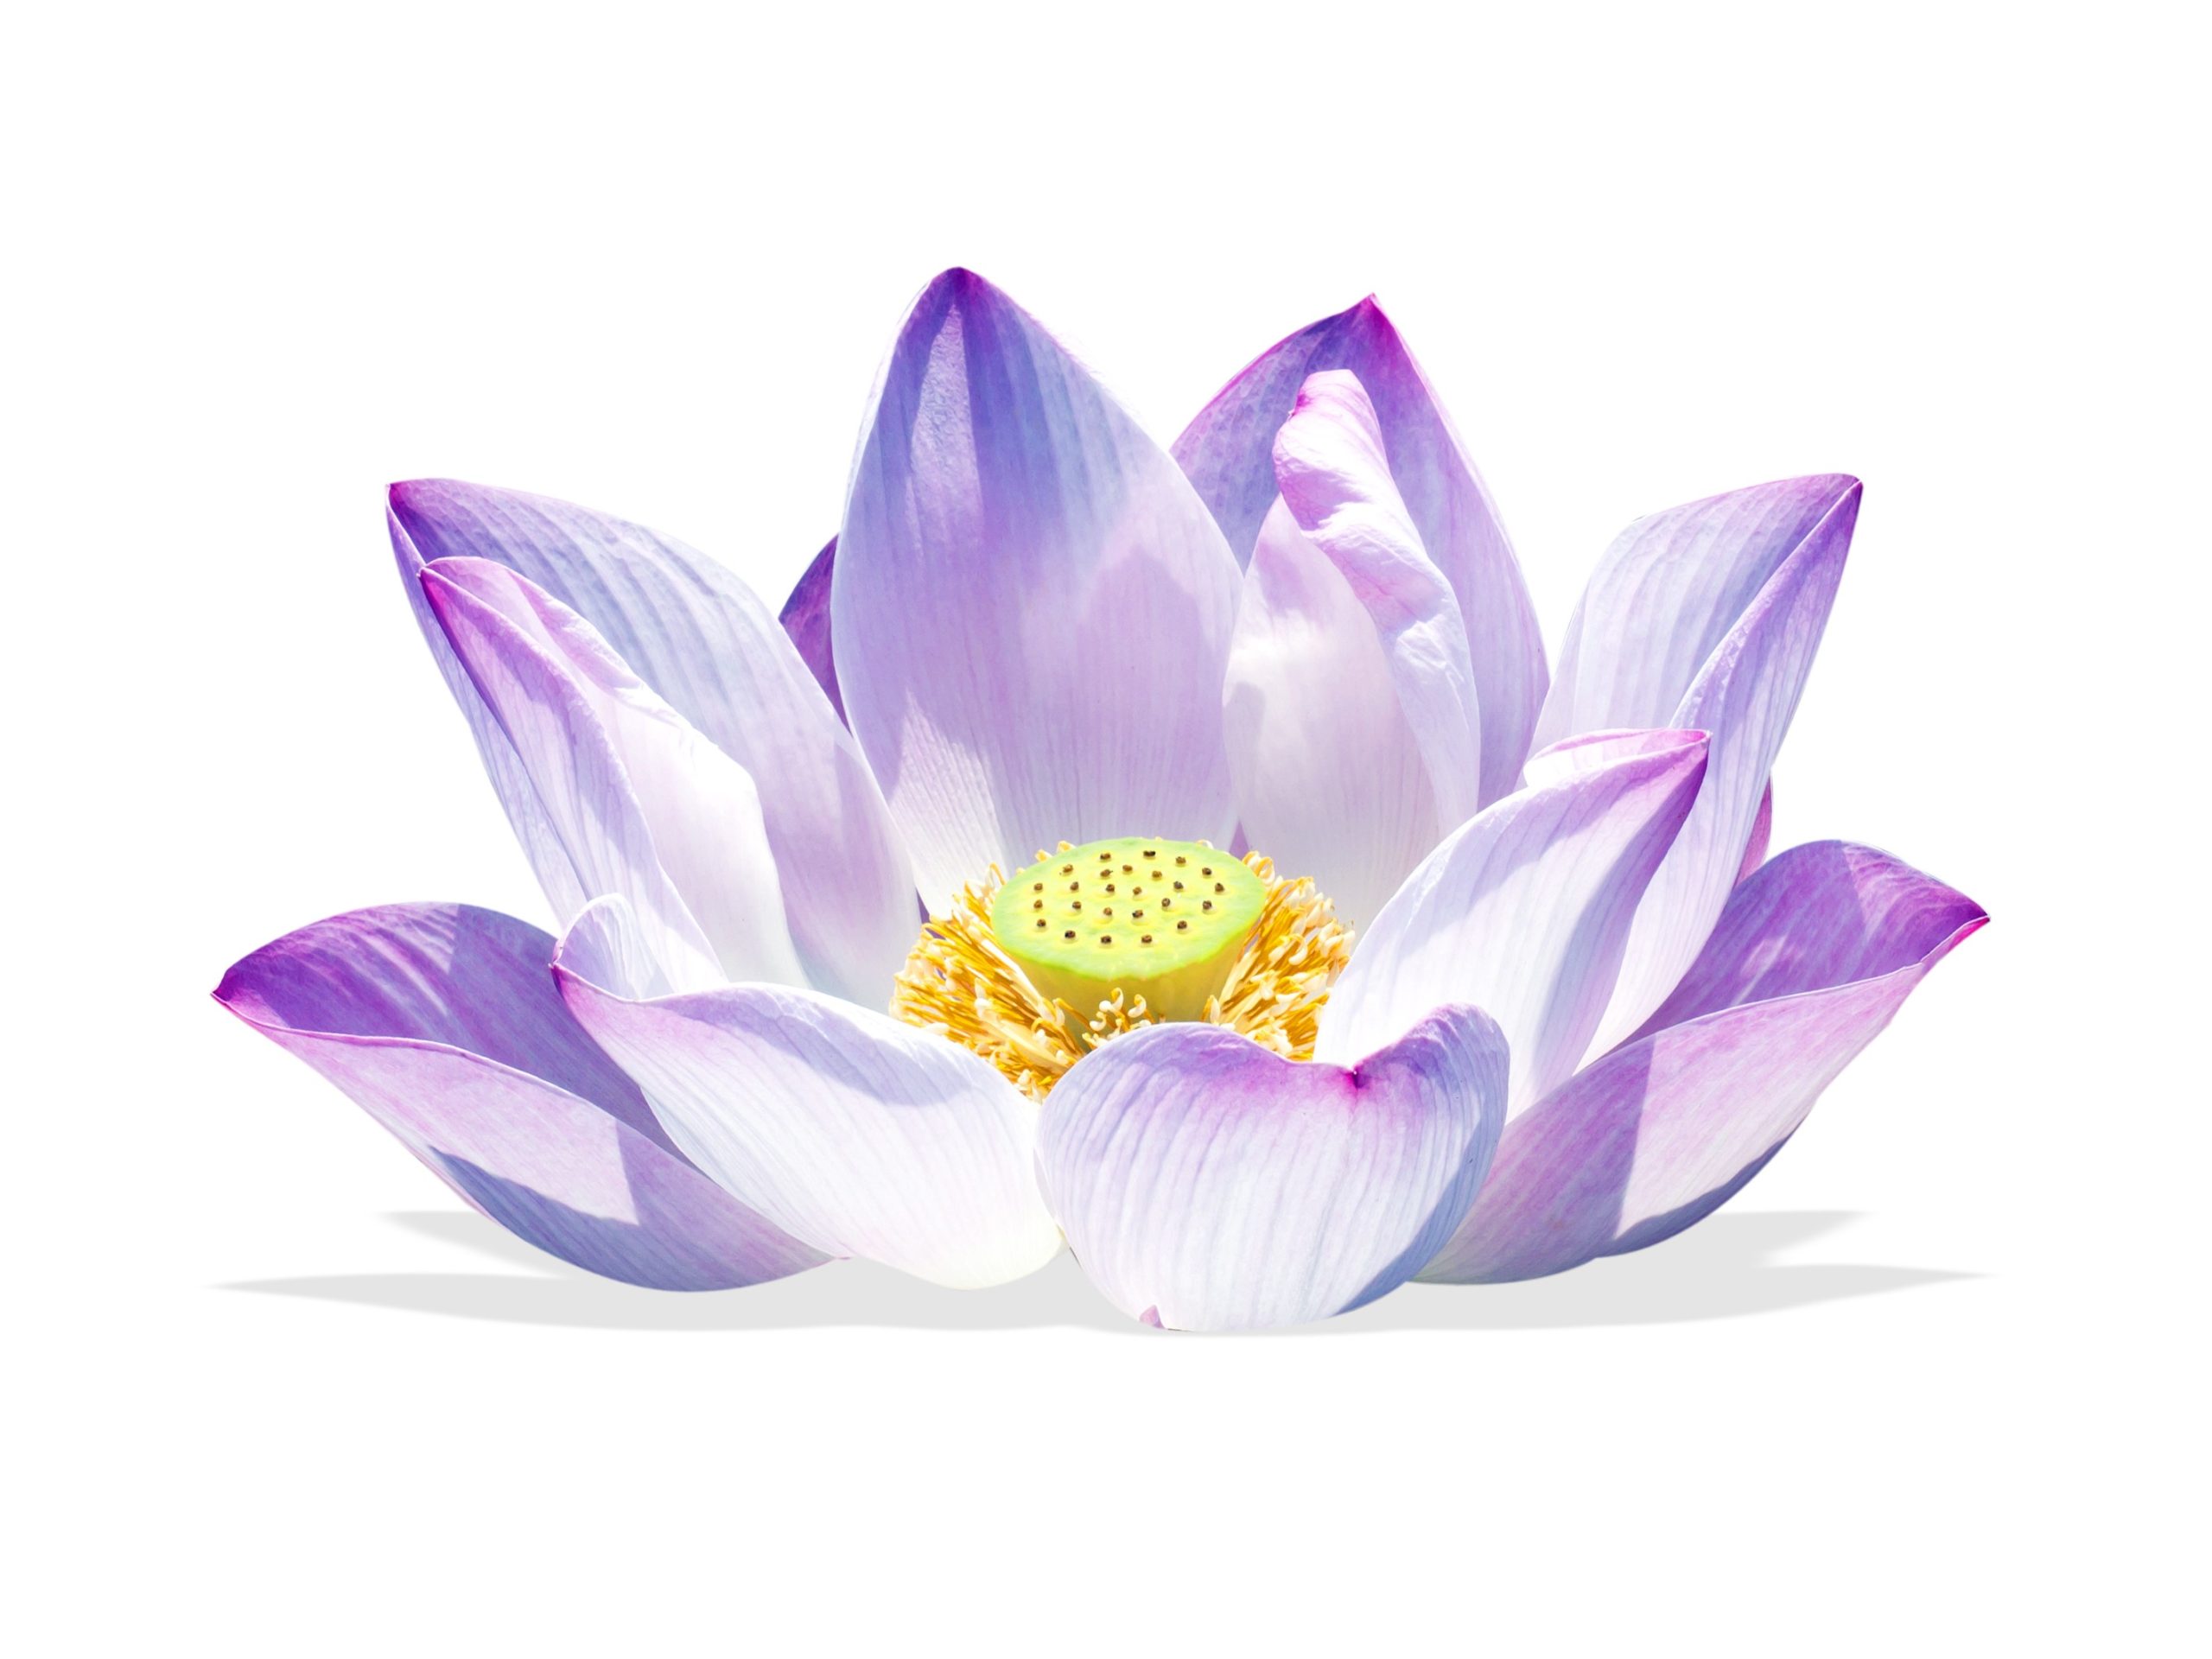 Selbsterkenntnis bei Stress wird zum Erlebnis. Es öffnet sich eine Lotusblüte im Inneren.